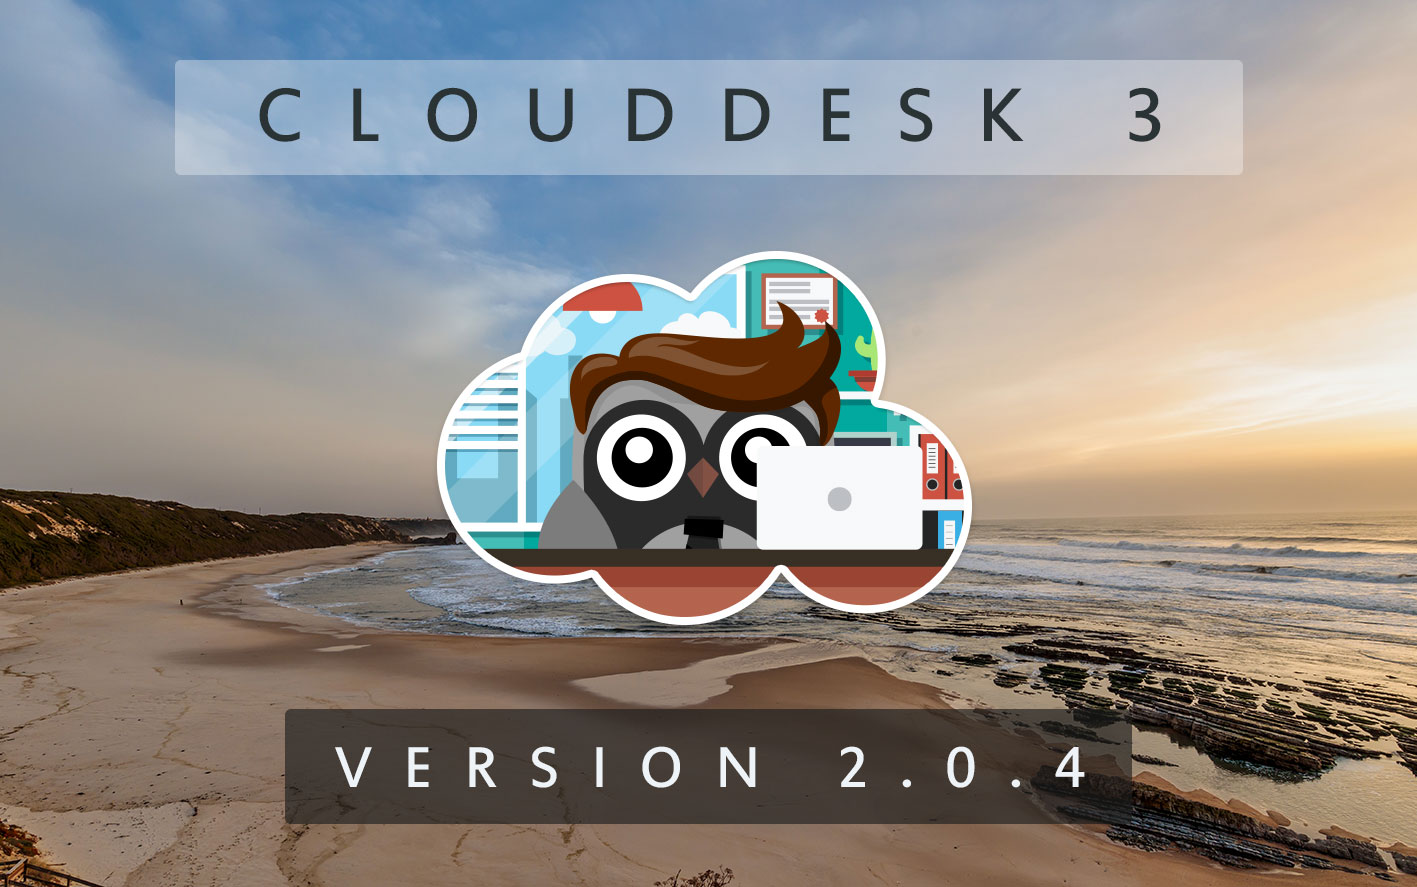 Cloud Desk 3 - Version 2.0.4